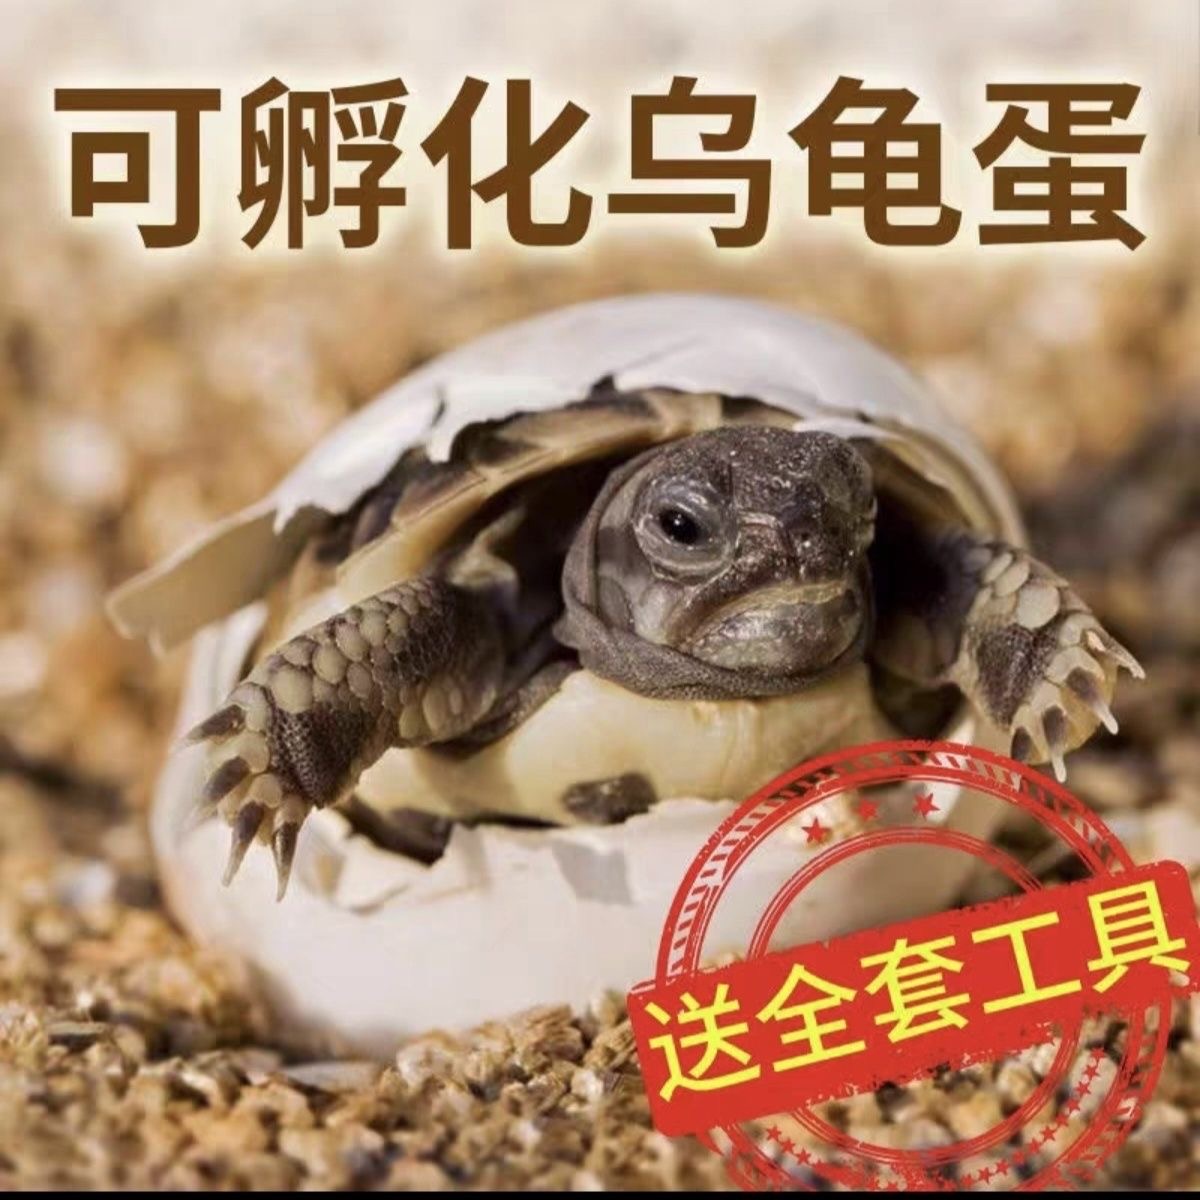 【孵化乌龟蛋】墨龟活体草龟蛋墨龟蛋巴西龟顶墨乌龟蛋花龟可孵化